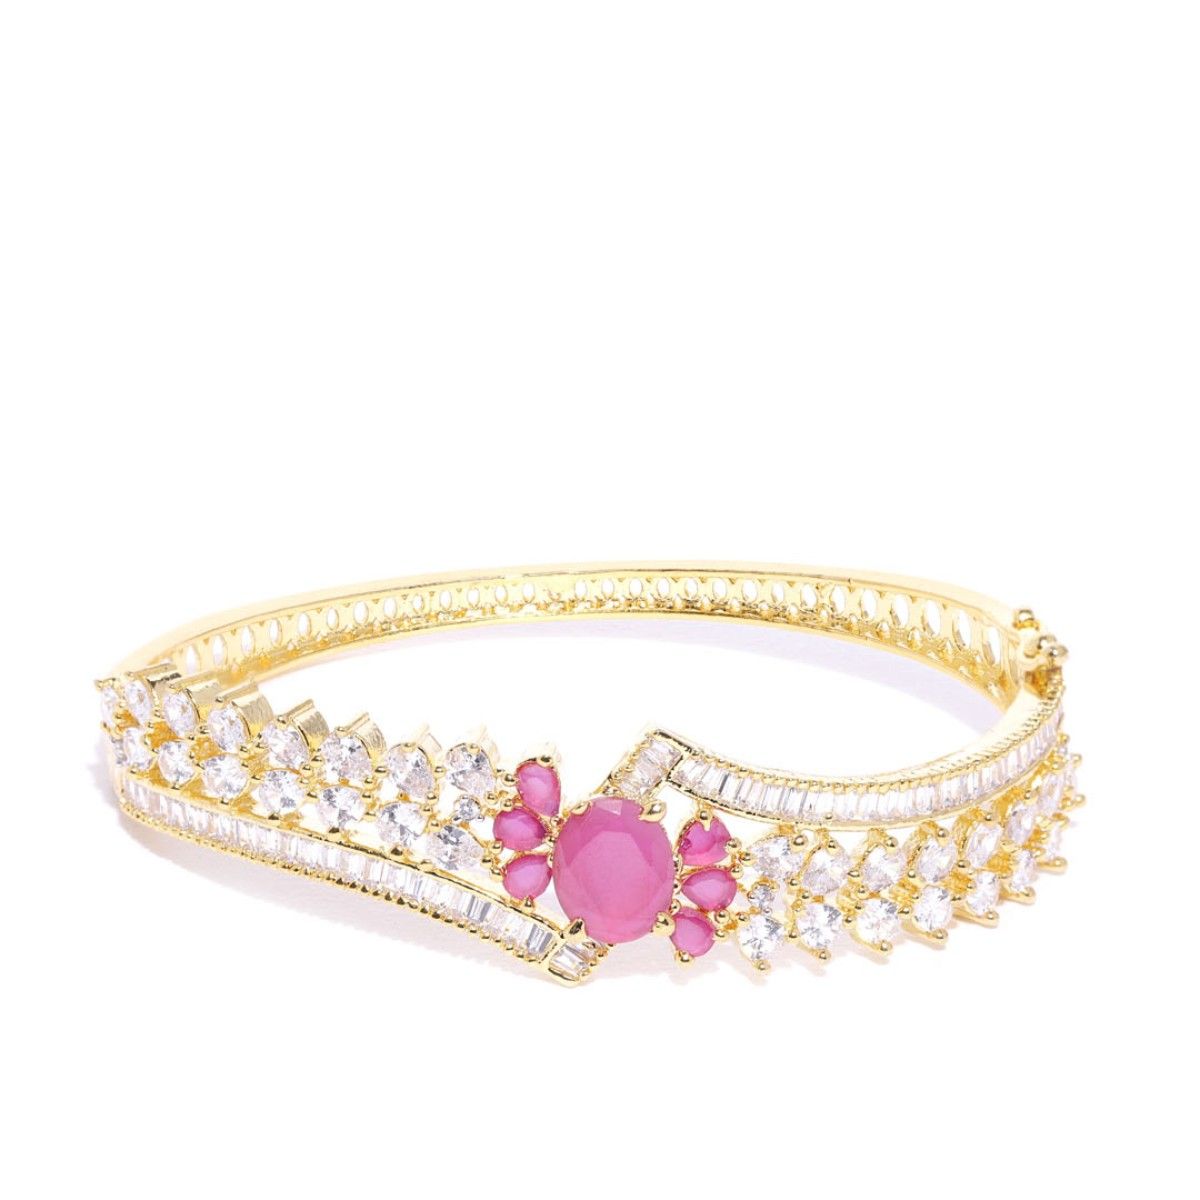 ruby bracelet  gold bracelet  gold ruby bracelet  gold ruby bangles   gold bracelet with ruby stone  real ruby bracelet ban